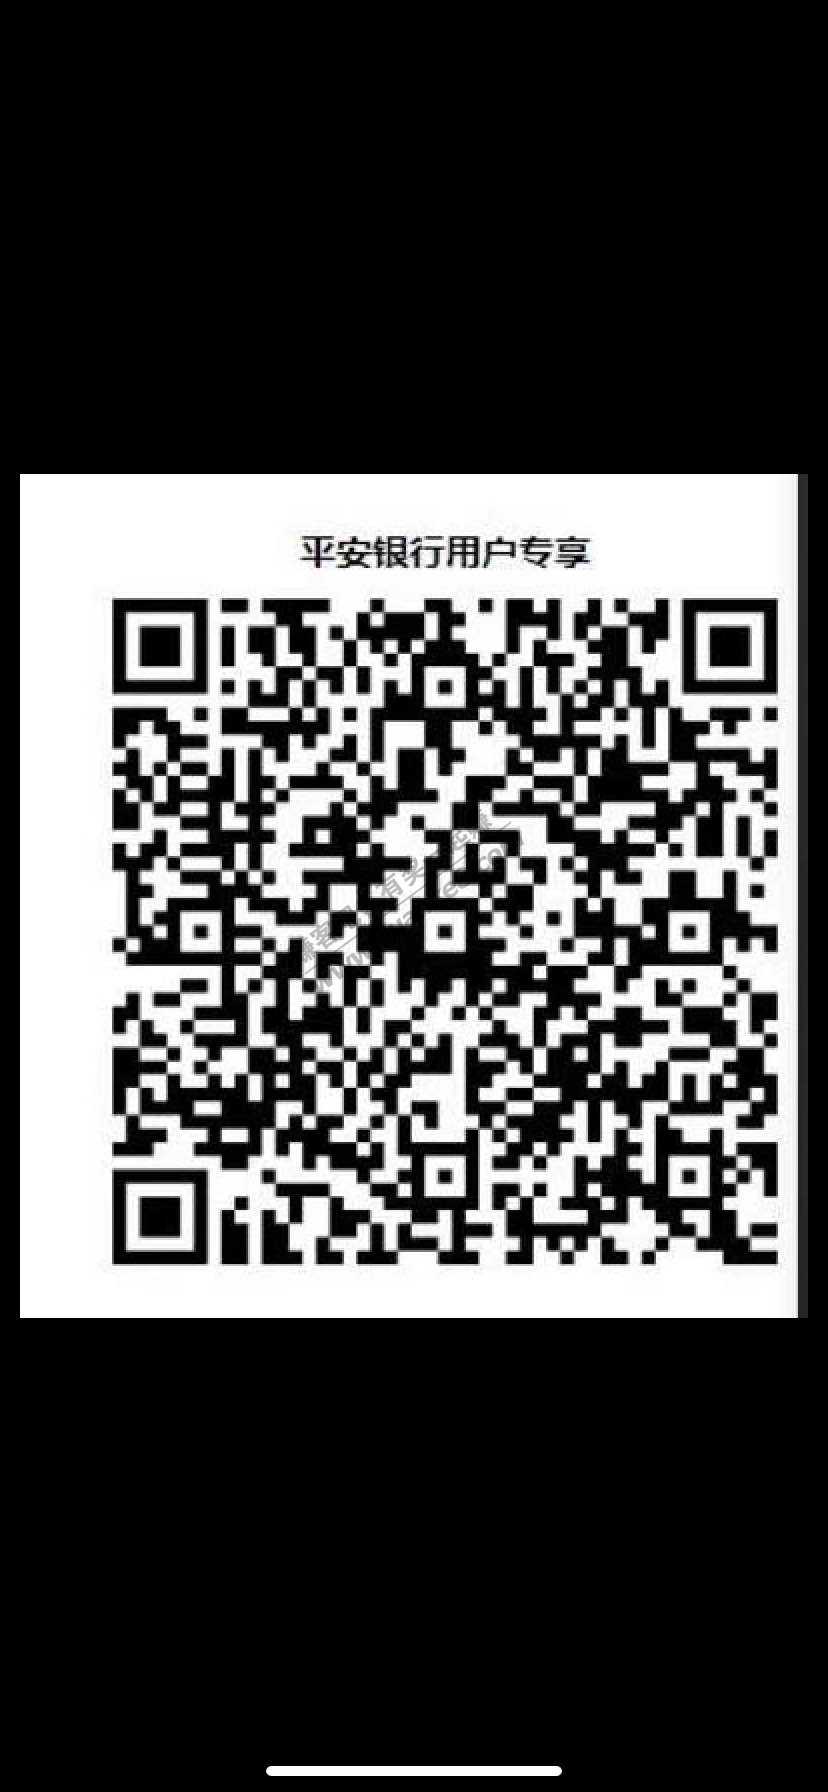 平安定期一个月40话费-惠小助(52huixz.com)